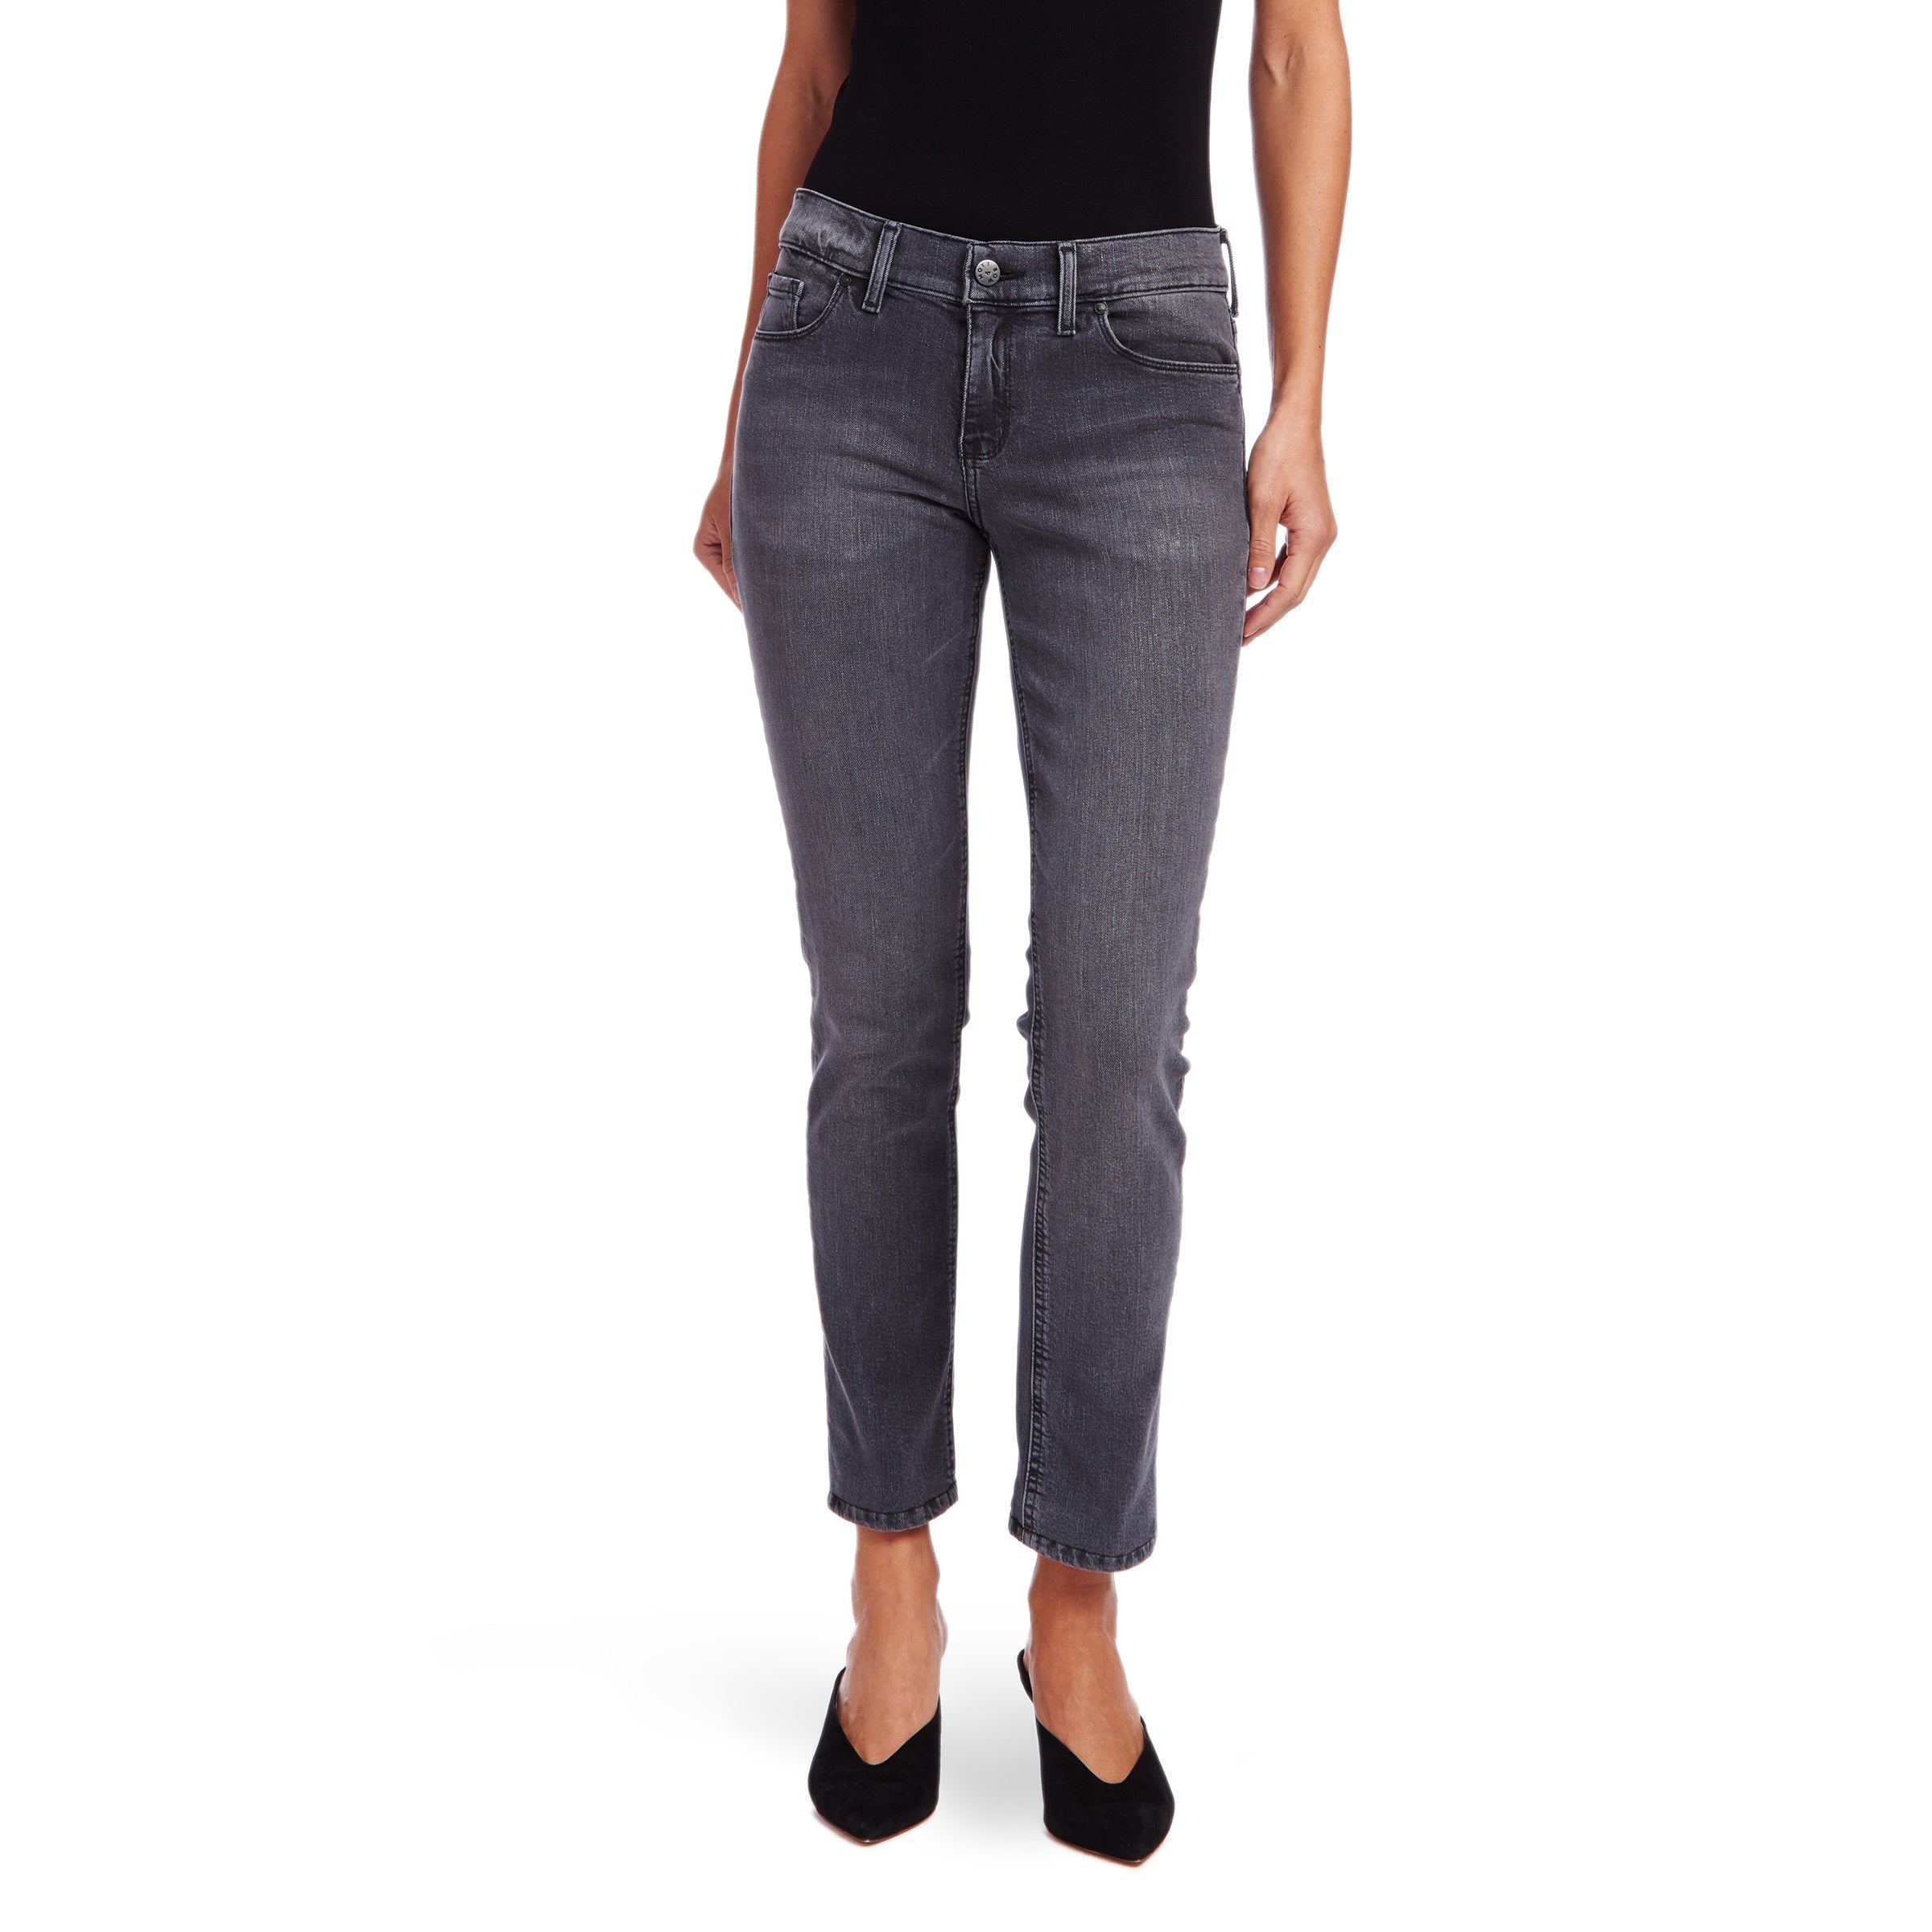 Women wearing Gray Slim Straight Allen Jeans